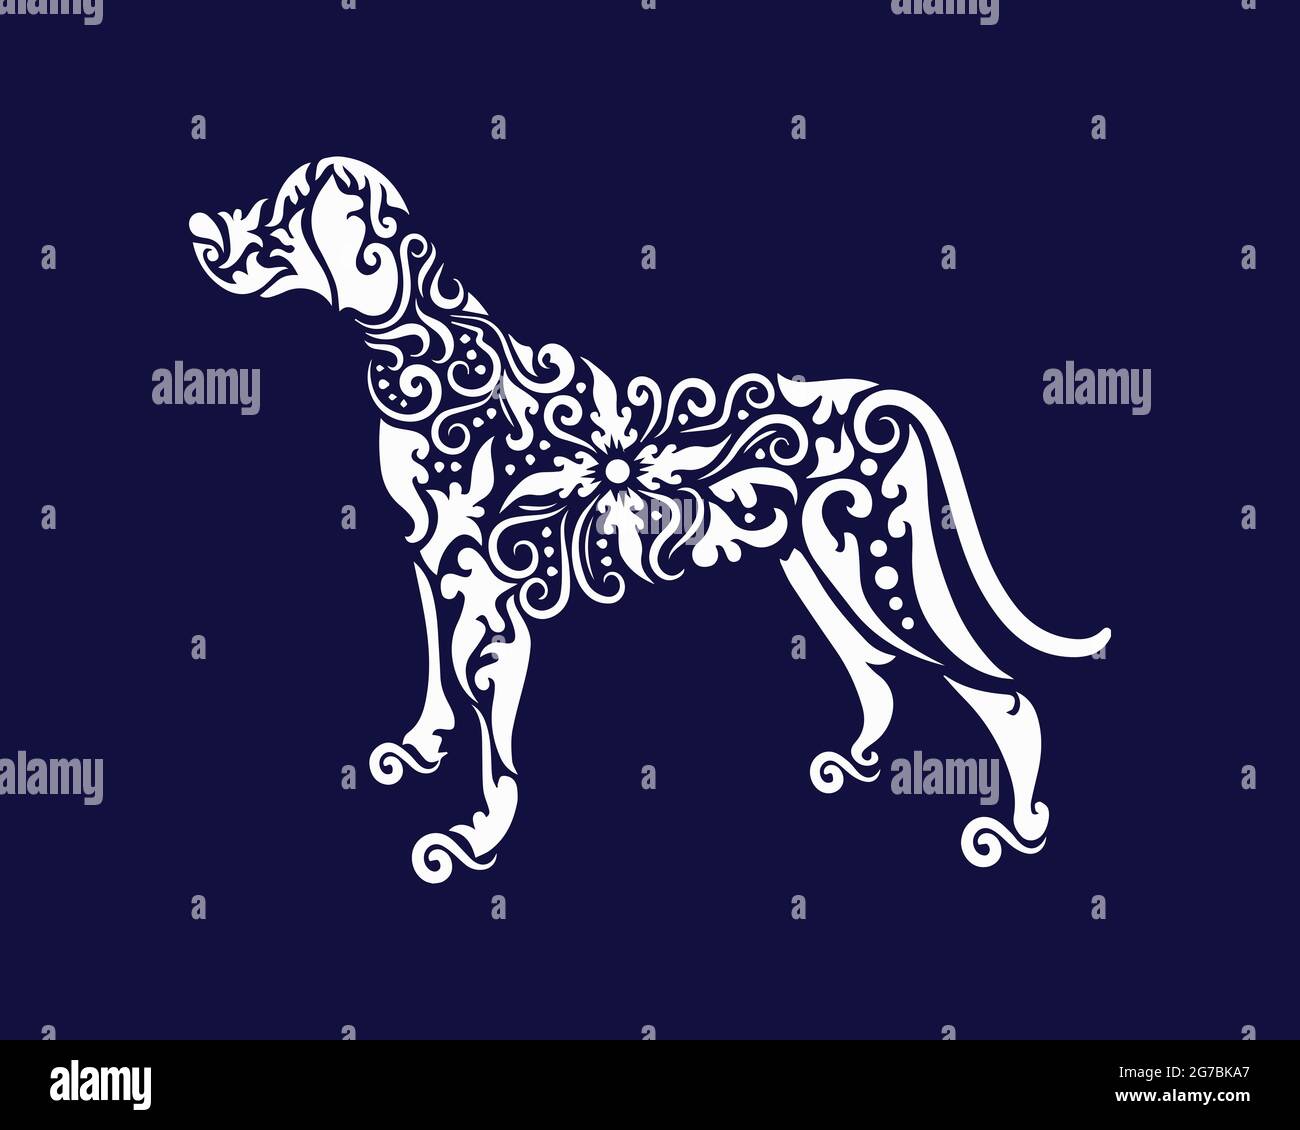 Ornamento di cane stile Logo può essere utilizzato come segno, icona o simbolo, vettore a strati completi e facile da modificare e personalizzare dimensioni e colore, compatibile WIT Illustrazione Vettoriale